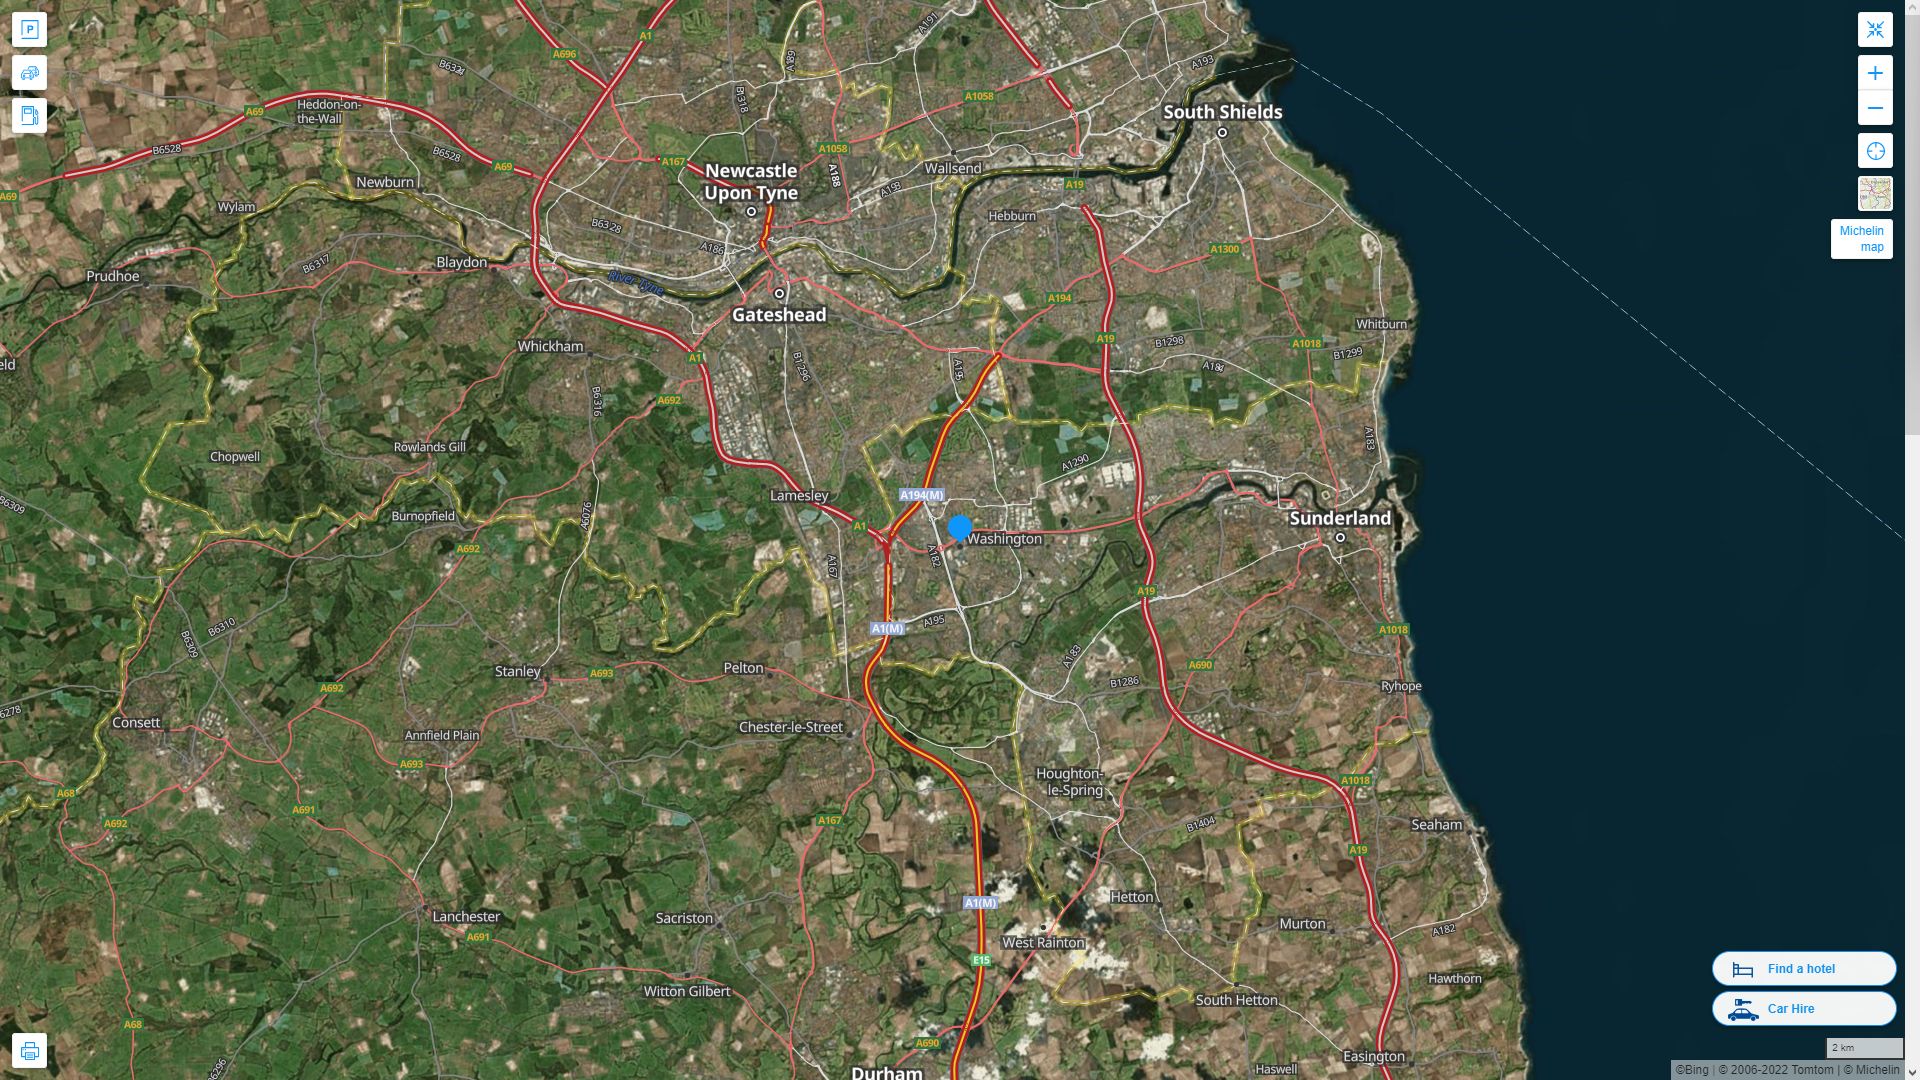 Washington UK Royaume Uni Autoroute et carte routiere avec vue satellite